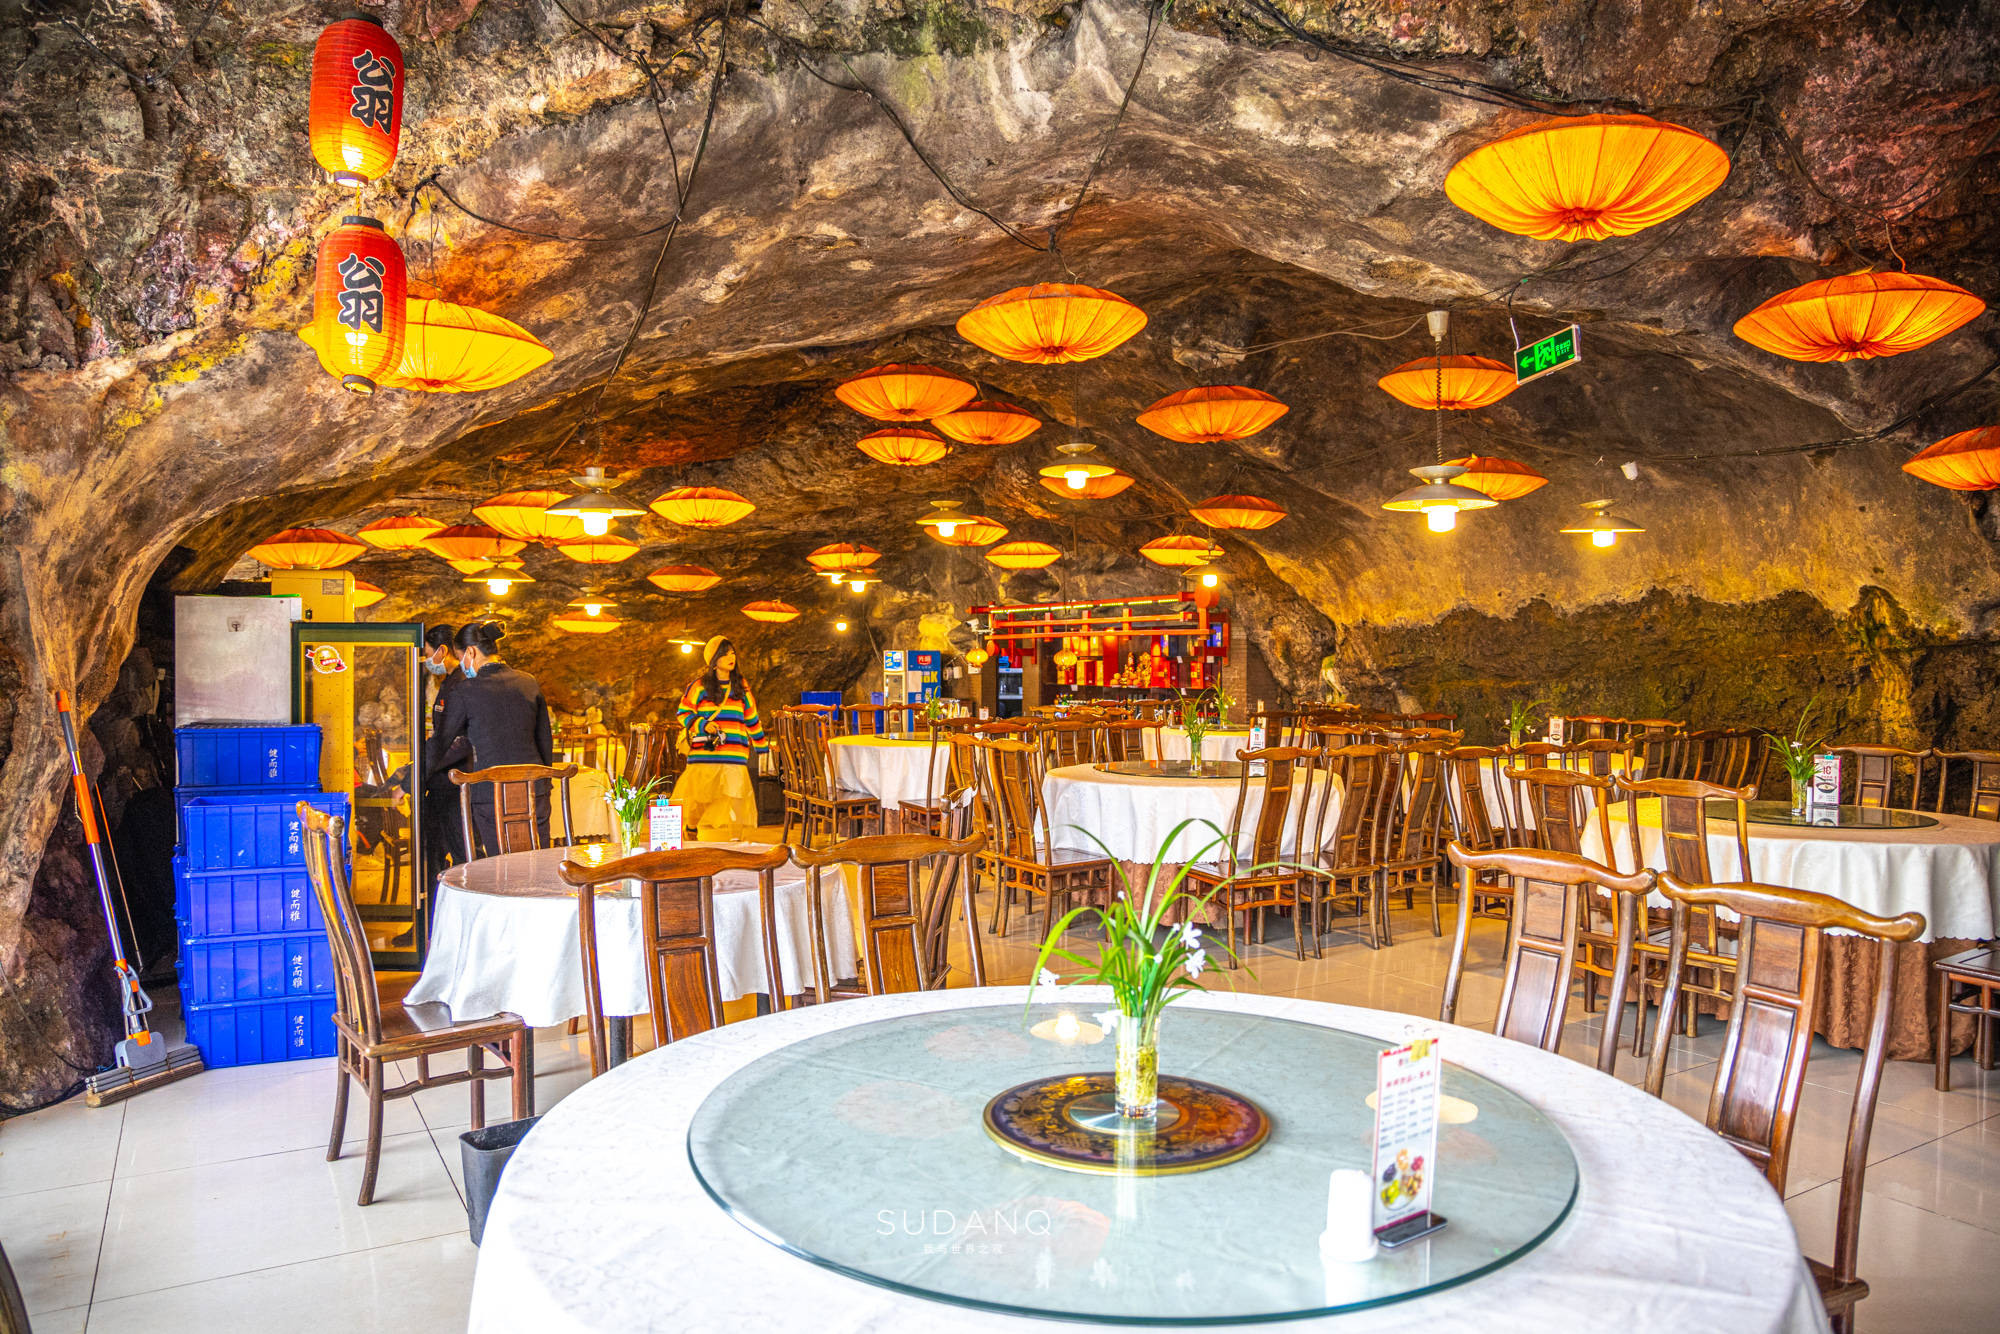 桑给巴尔岛岩石餐厅图片